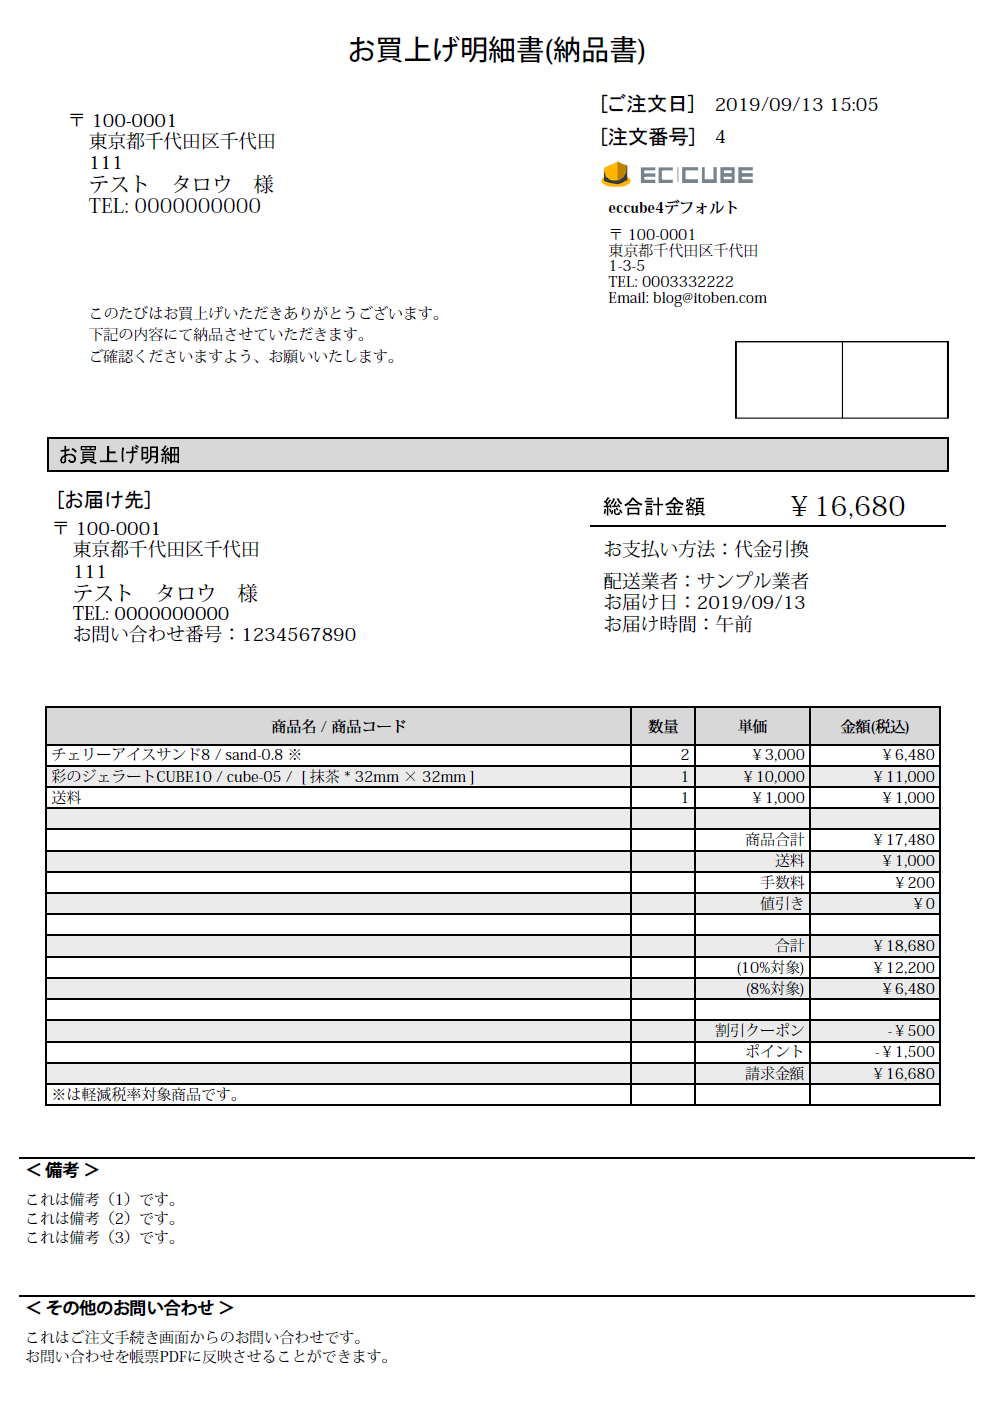 4 0系 帳票pdf 軽減税率対応版 プラグイン Itoben Style